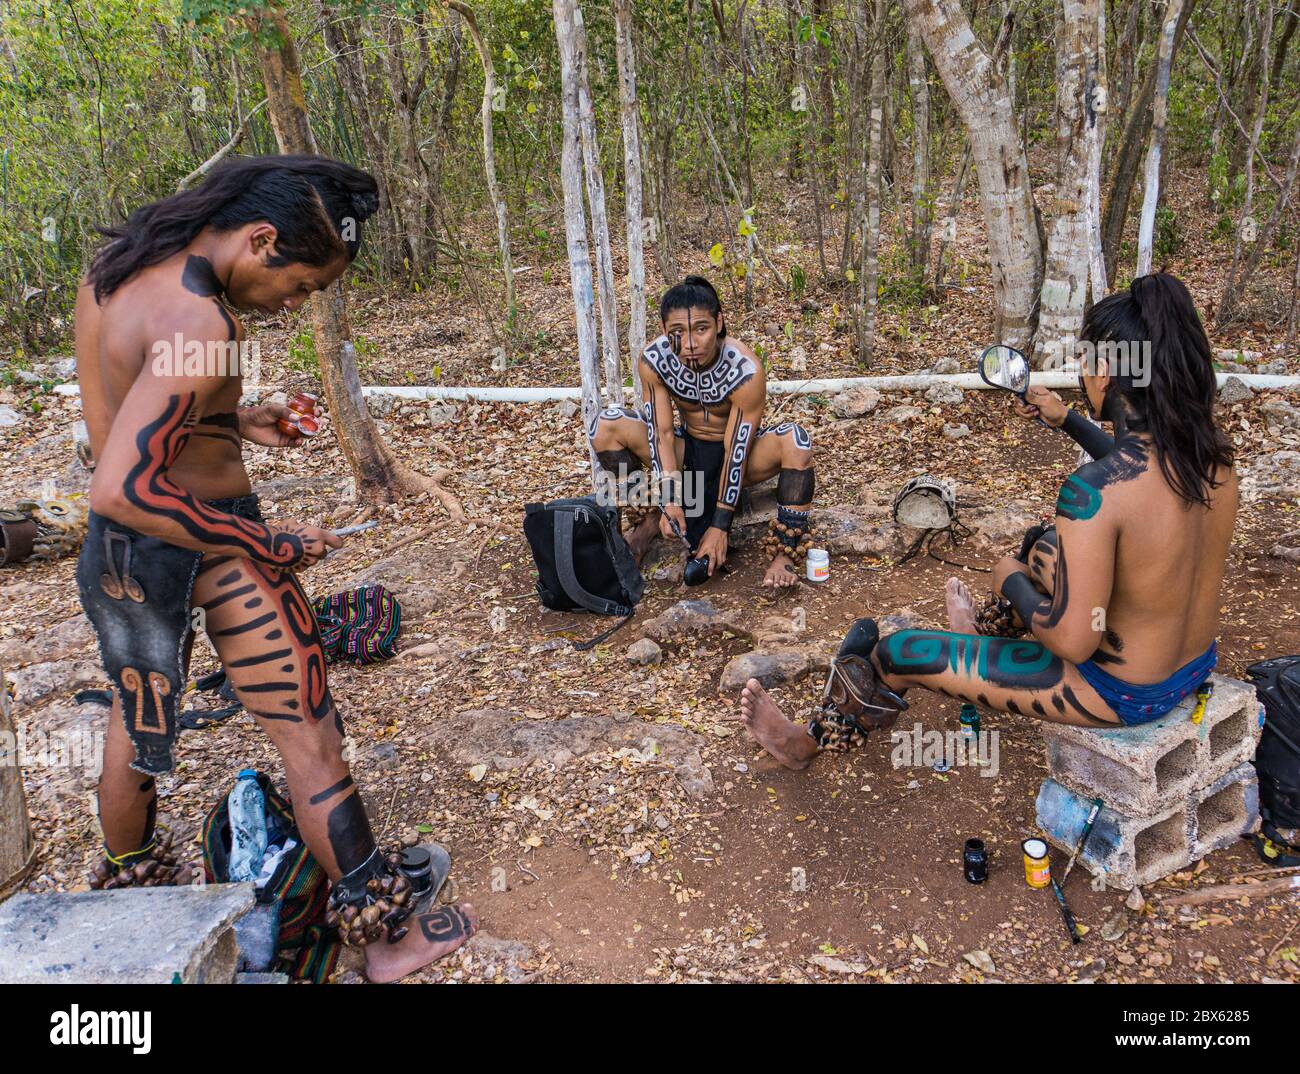 Valladolid, Yucatan/Mexique - février 24,2020 : jeunes hommes mayas se préparant en costume pour la cérémonie maya traditionnelle Banque D'Images